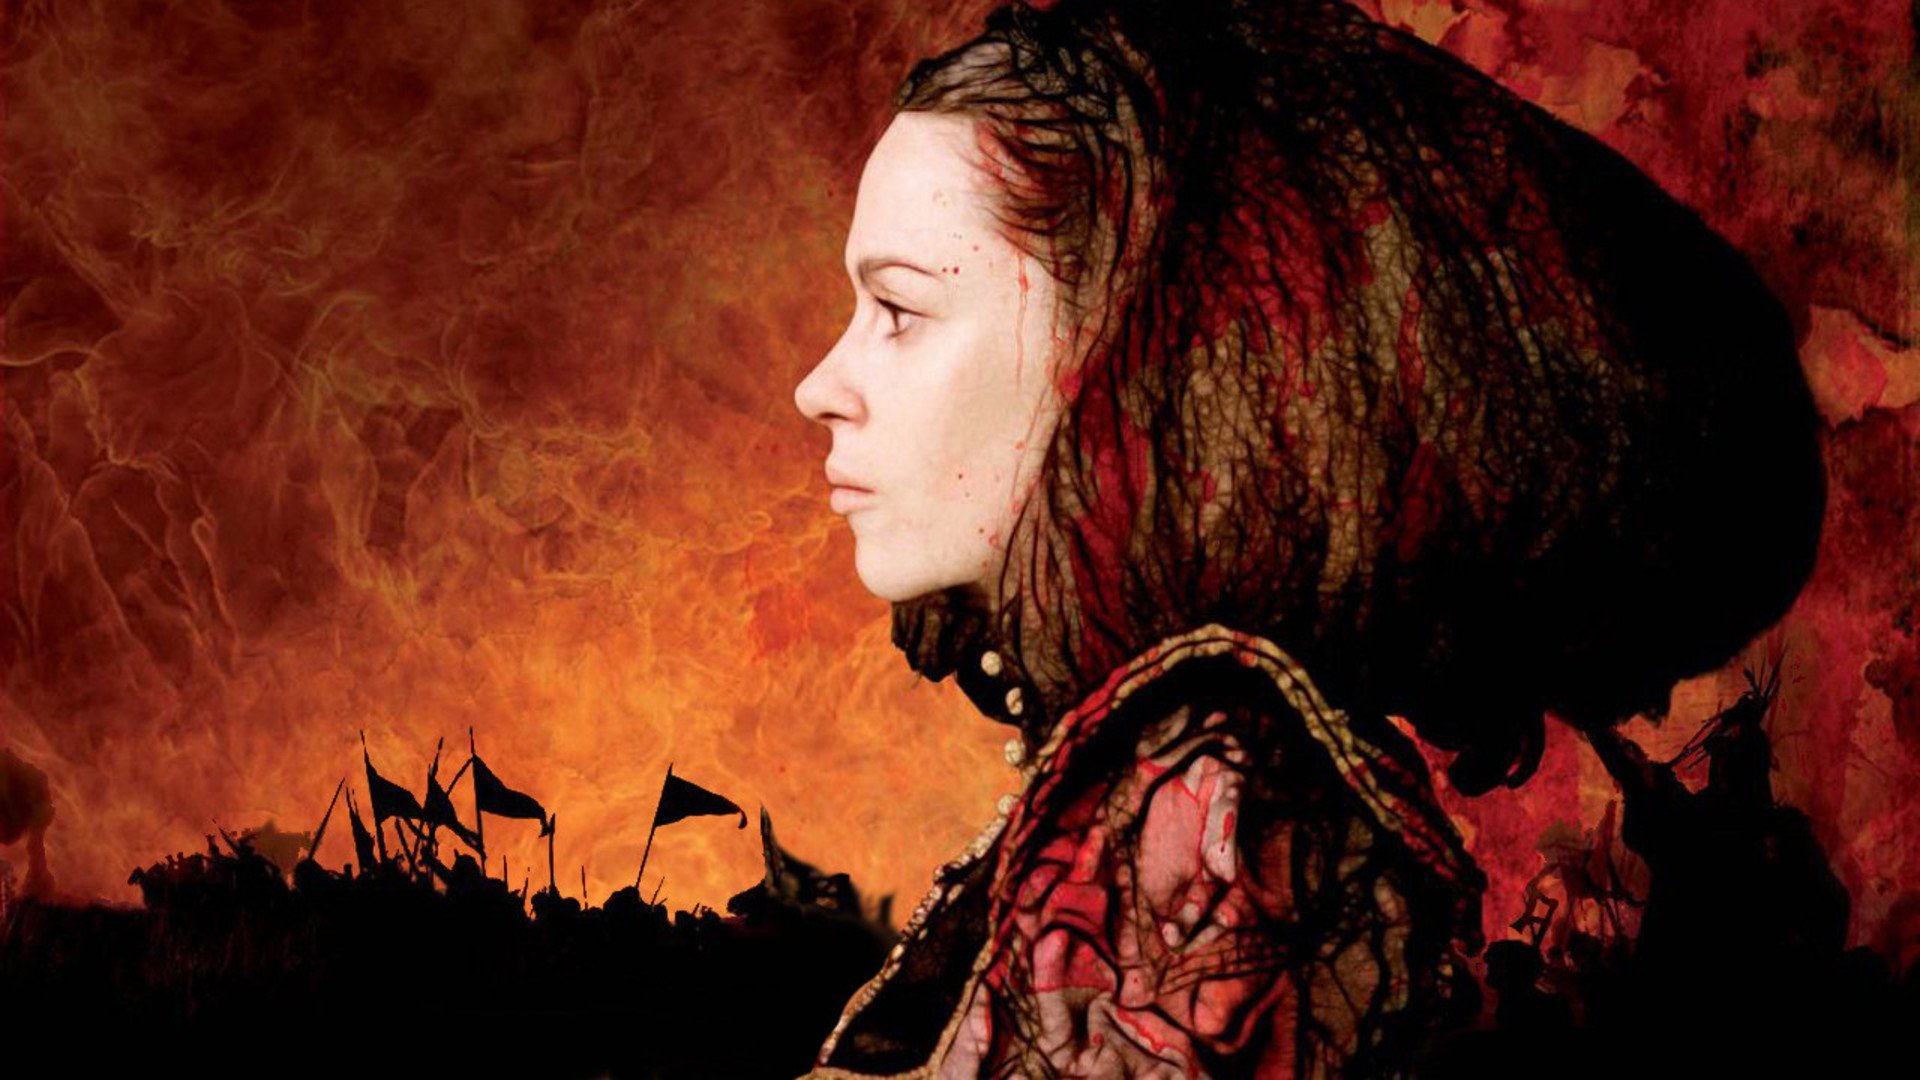 ბატორი: სისხლისმსმელი გრაფინია / Bathory: Countess of Blood ქართულად